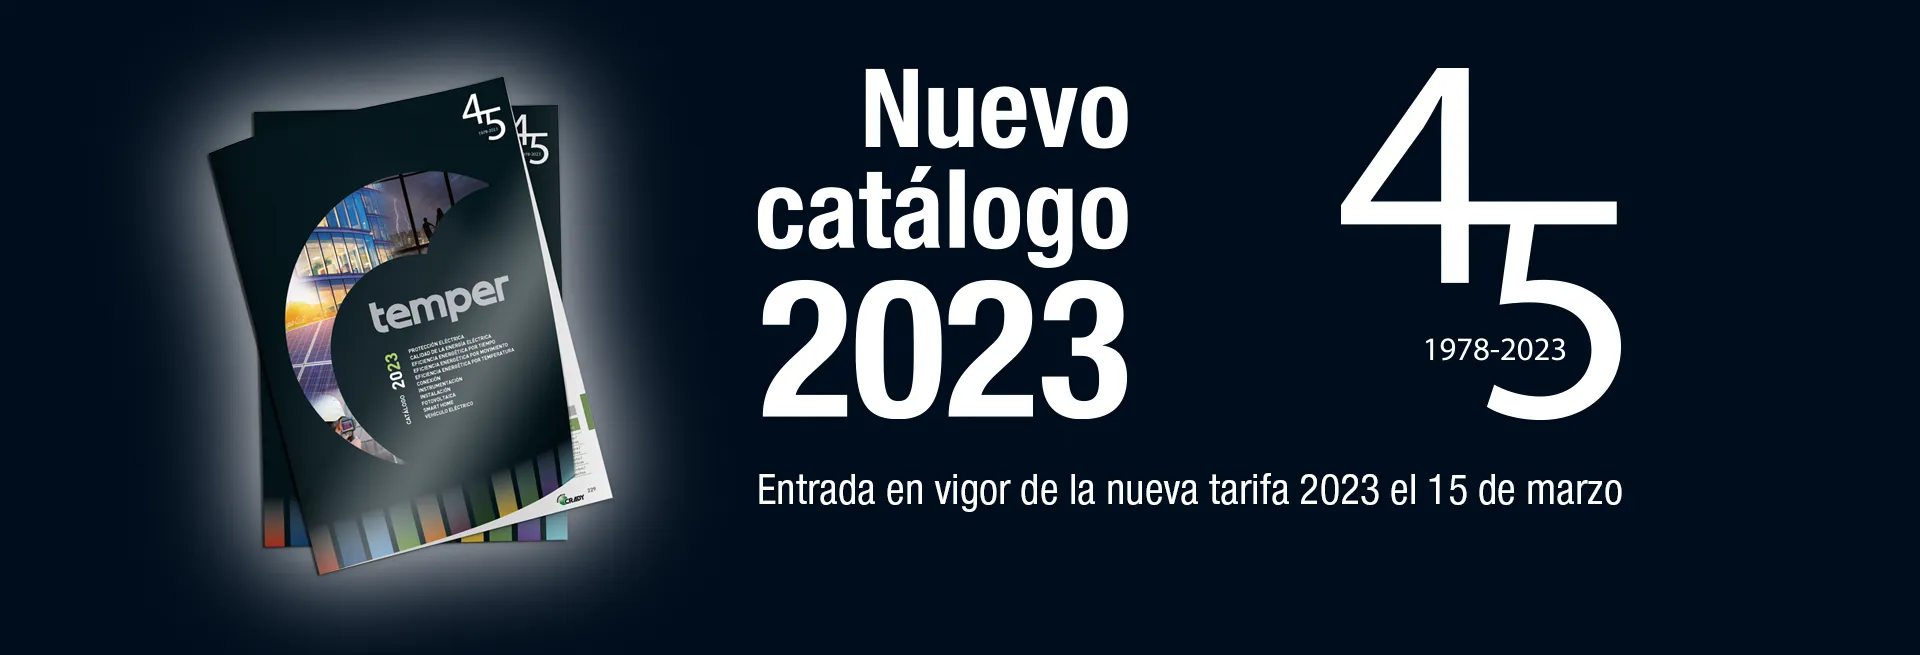 Nuevo catálogo 2023